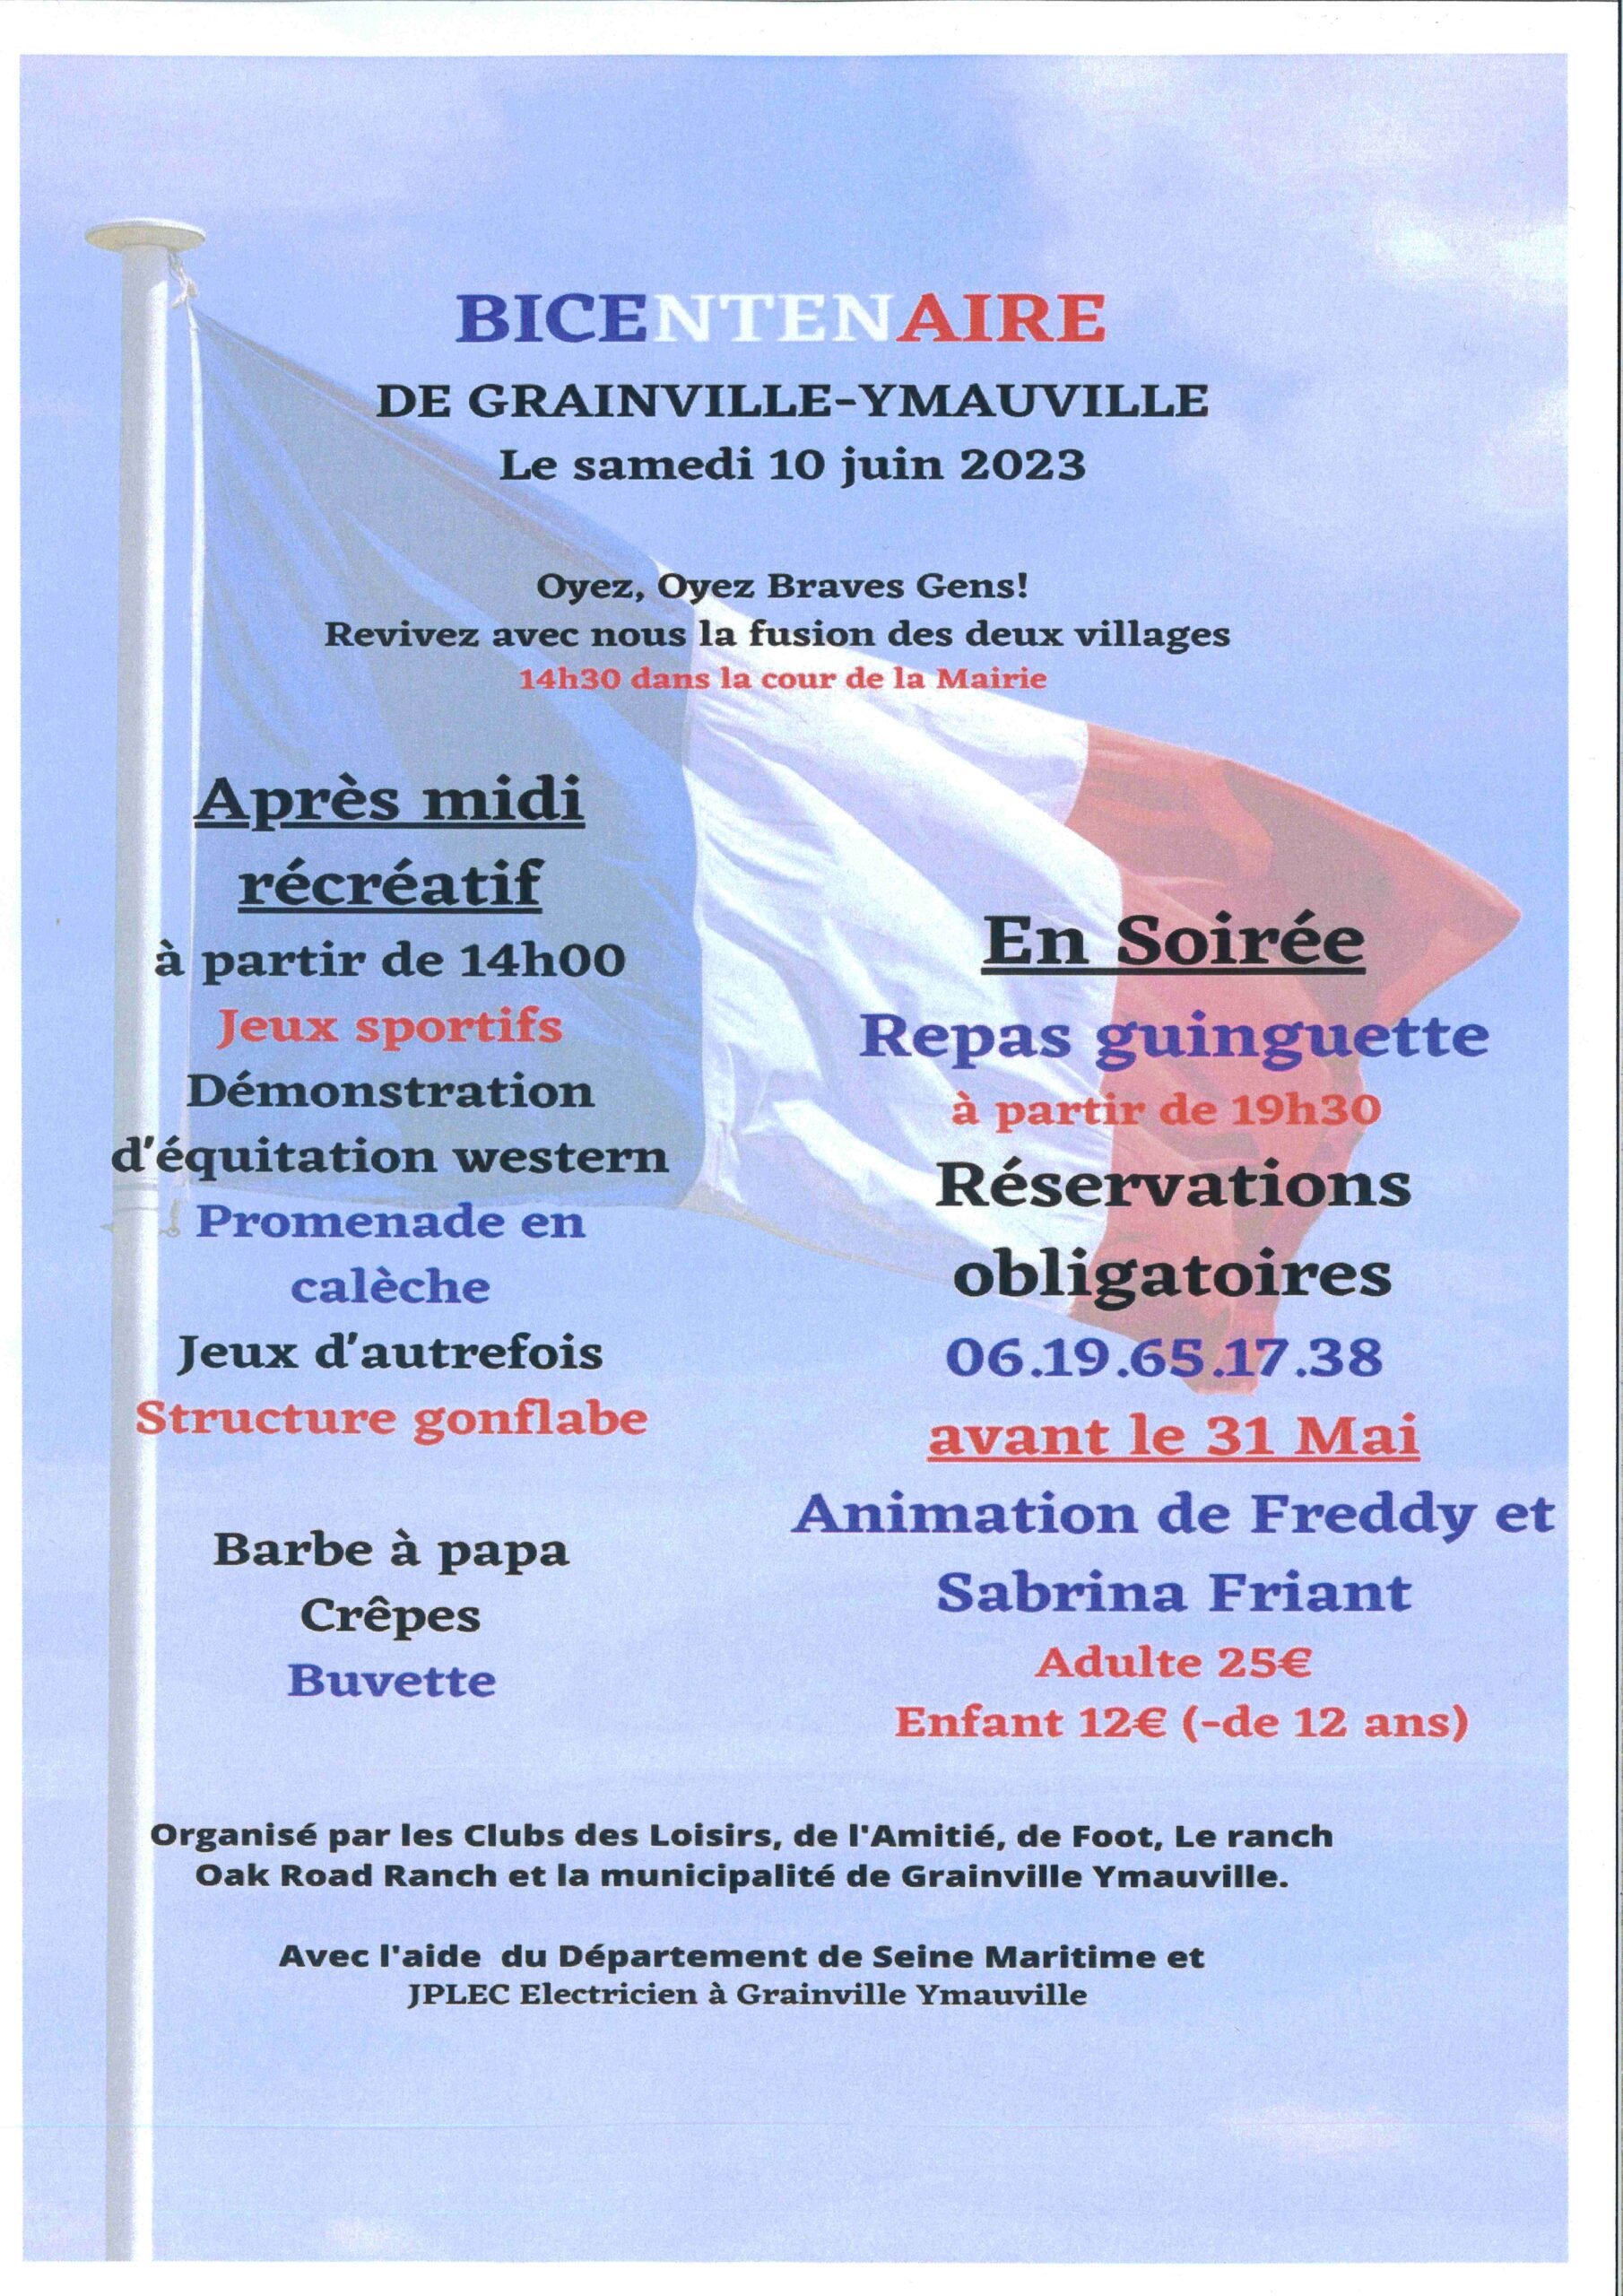 Bicentenaire de Grainville-Ymauville